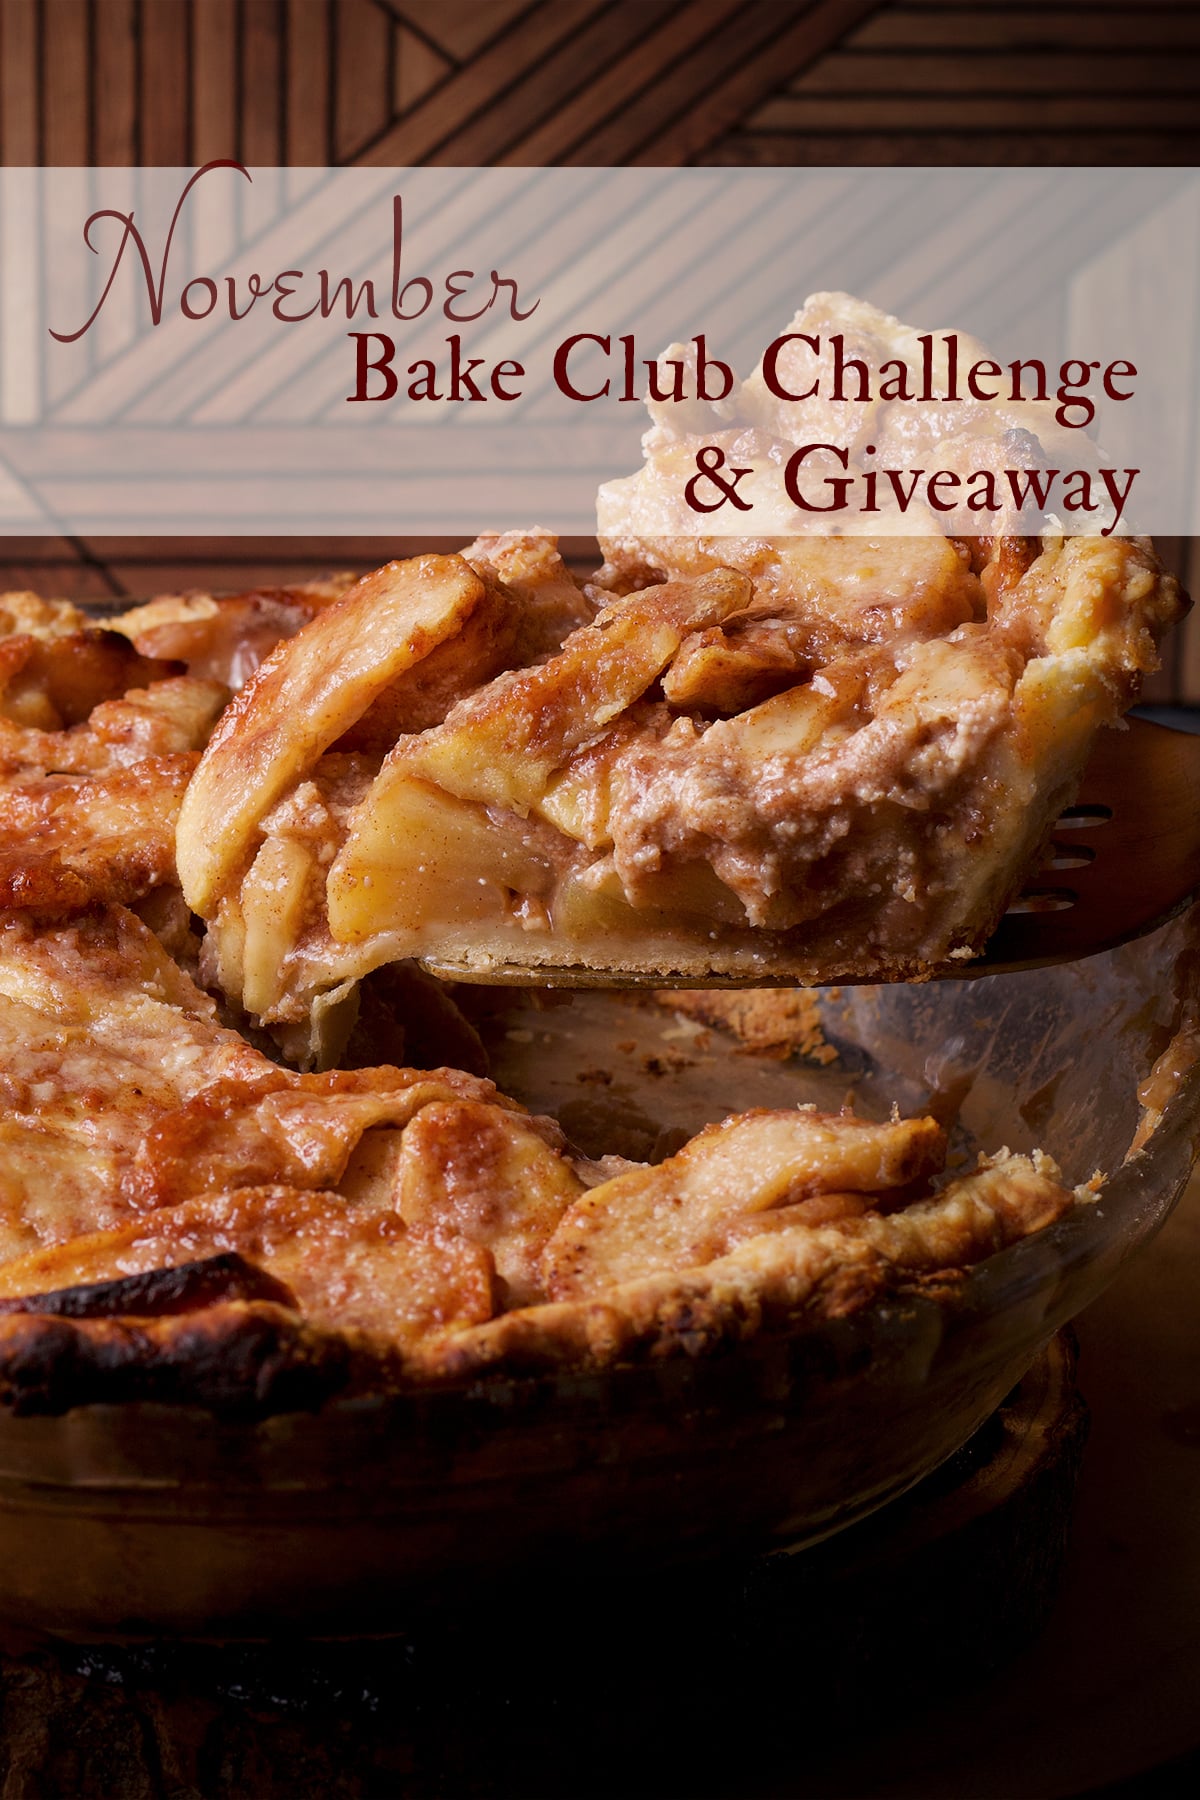 The November Bake Club Challenge is German apple pie.